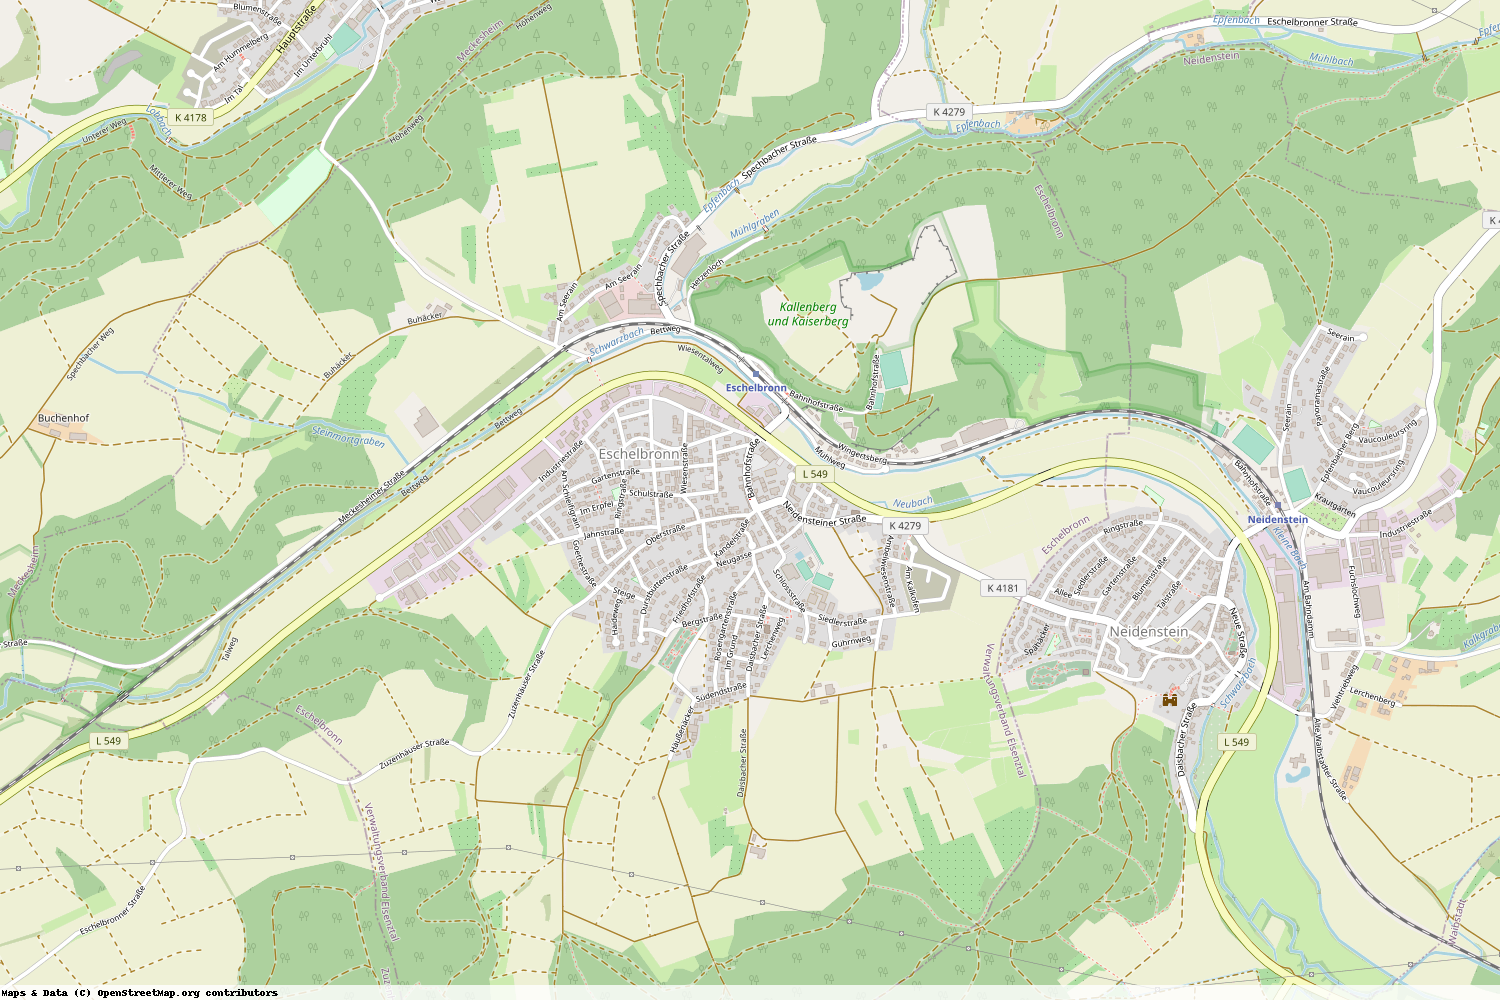 Ist gerade Stromausfall in Baden-Württemberg - Rhein-Neckar-Kreis - Eschelbronn?